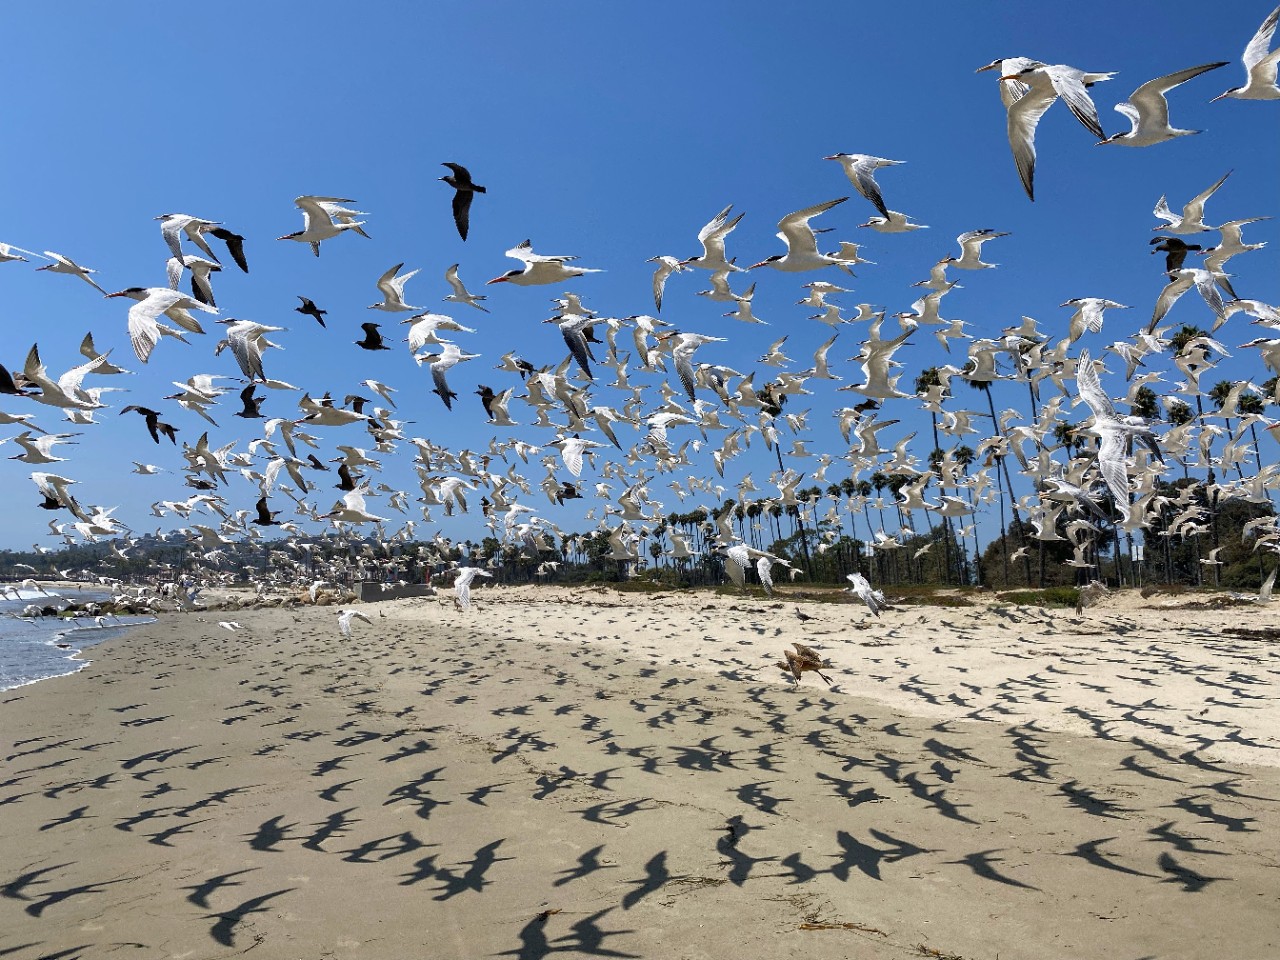 Birds flying over sandy beach.